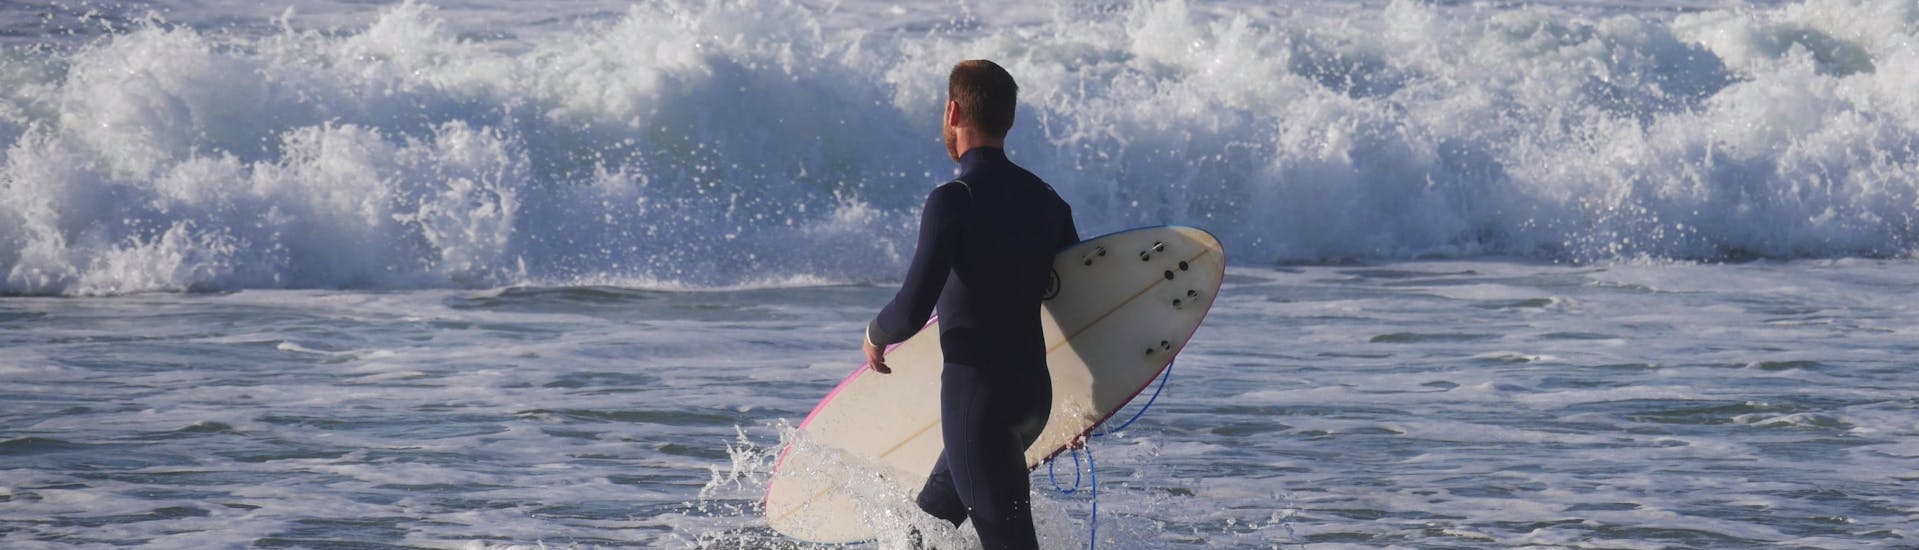 Ein Surfer trägt beim Surfen in Mimizan sein Brett ins Meer.